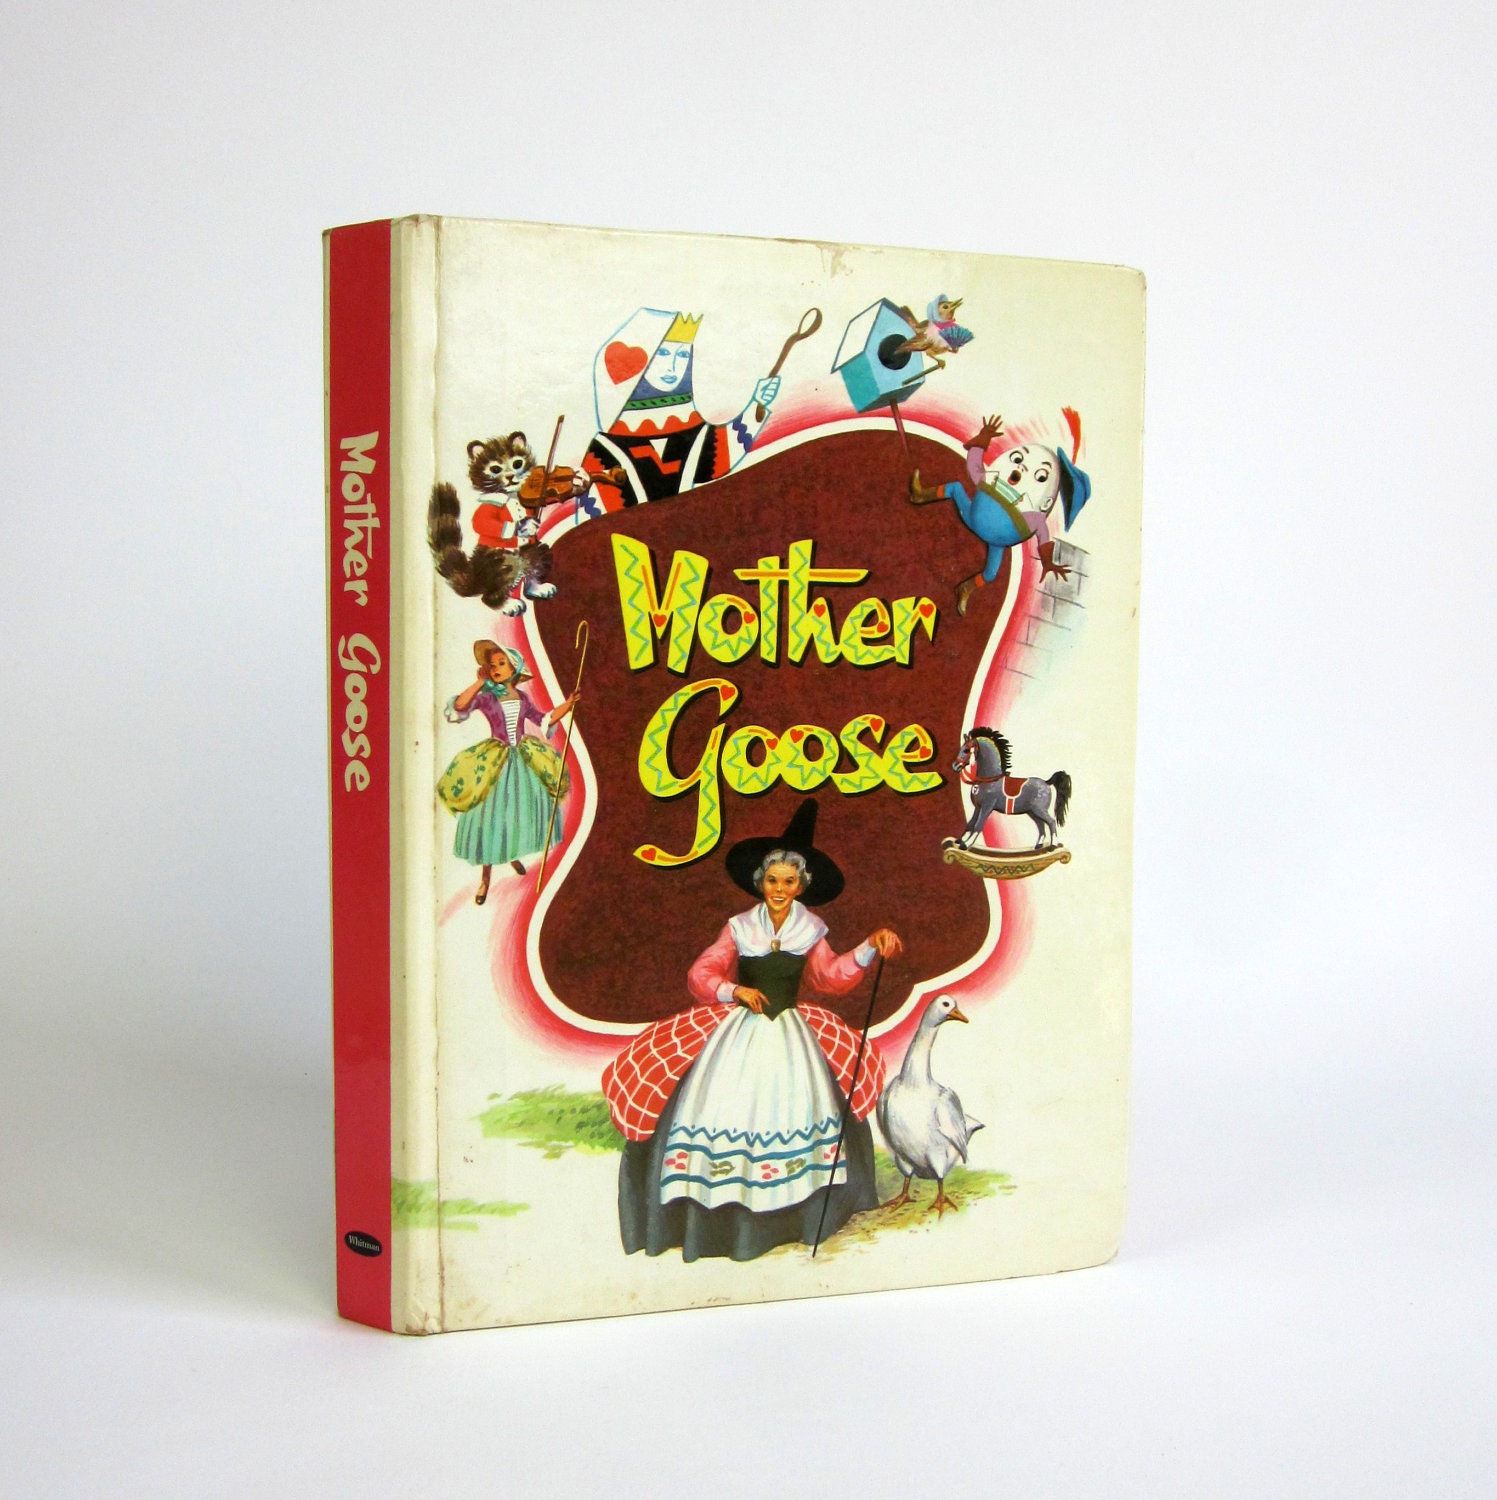 Whitman's Mother Goose 1953 / The Complete Book of Nursery Rhymes - OopseeDaisies